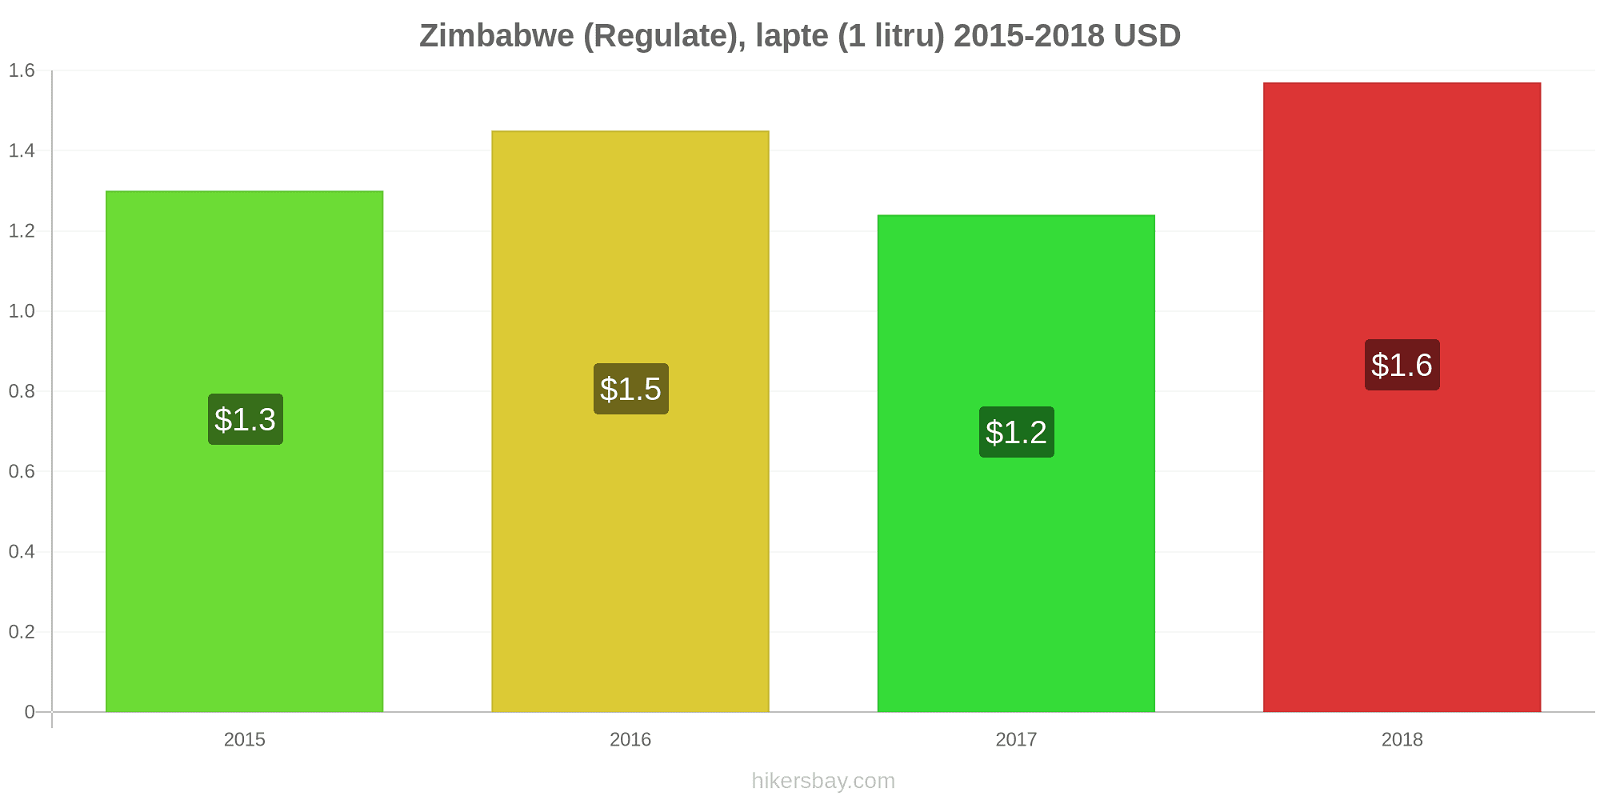 Zimbabwe modificări de preț (Regulate), lapte (1 litru) hikersbay.com